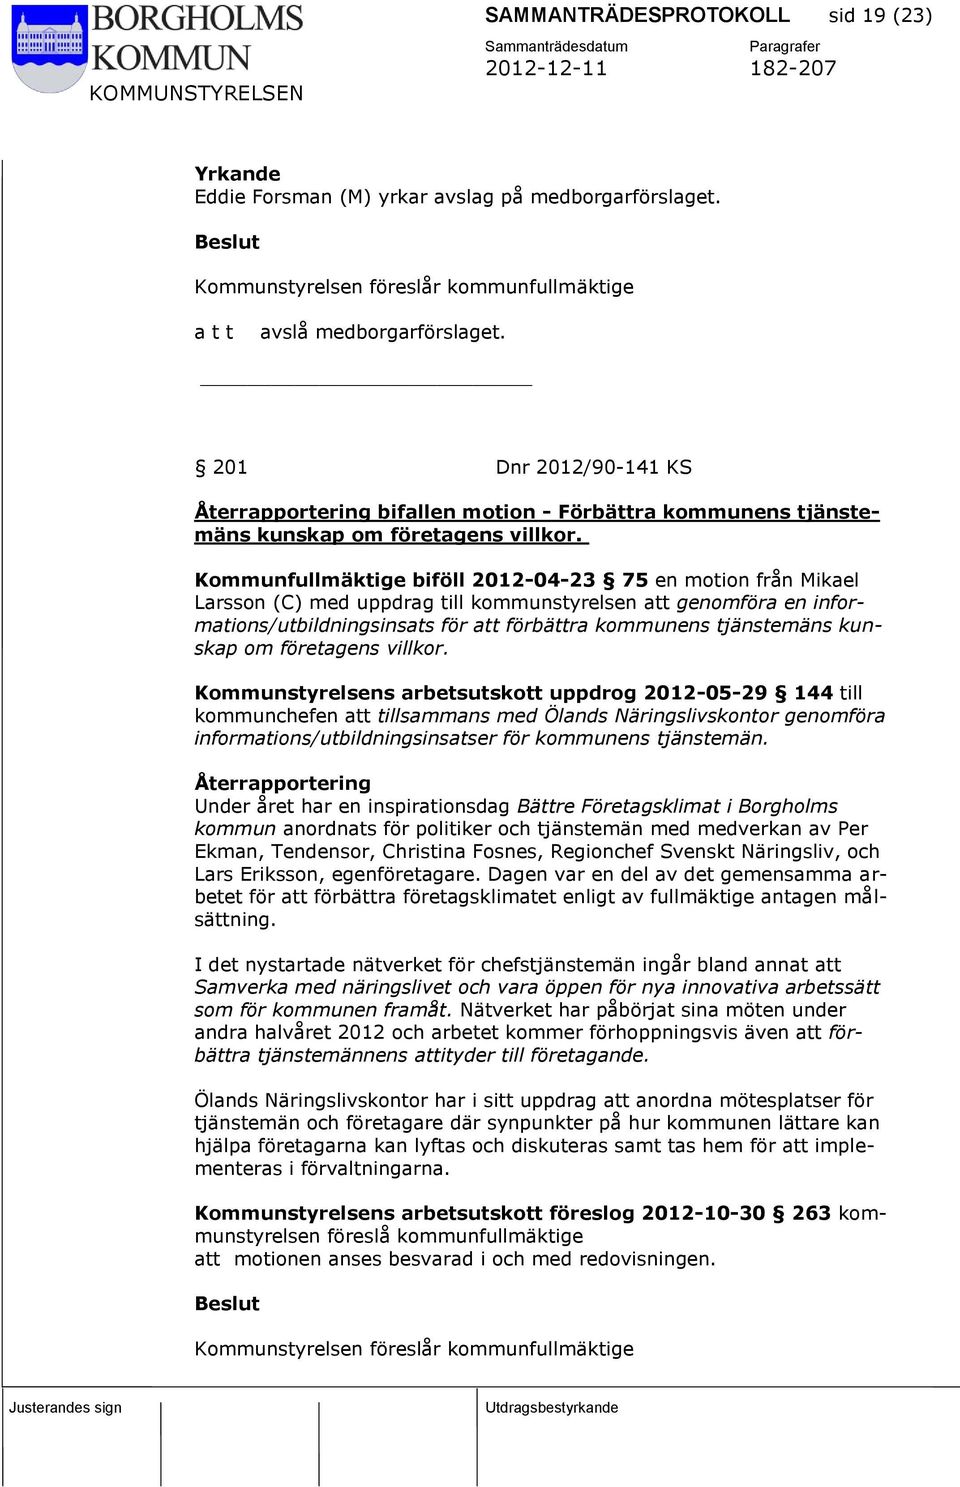 Kommunfullmäktige biföll 2012-04-23 75 en motion från Mikael Larsson (C) med uppdrag till kommunstyrelsen att genomföra en informations/utbildningsinsats för att förbättra kommunens tjänstemäns